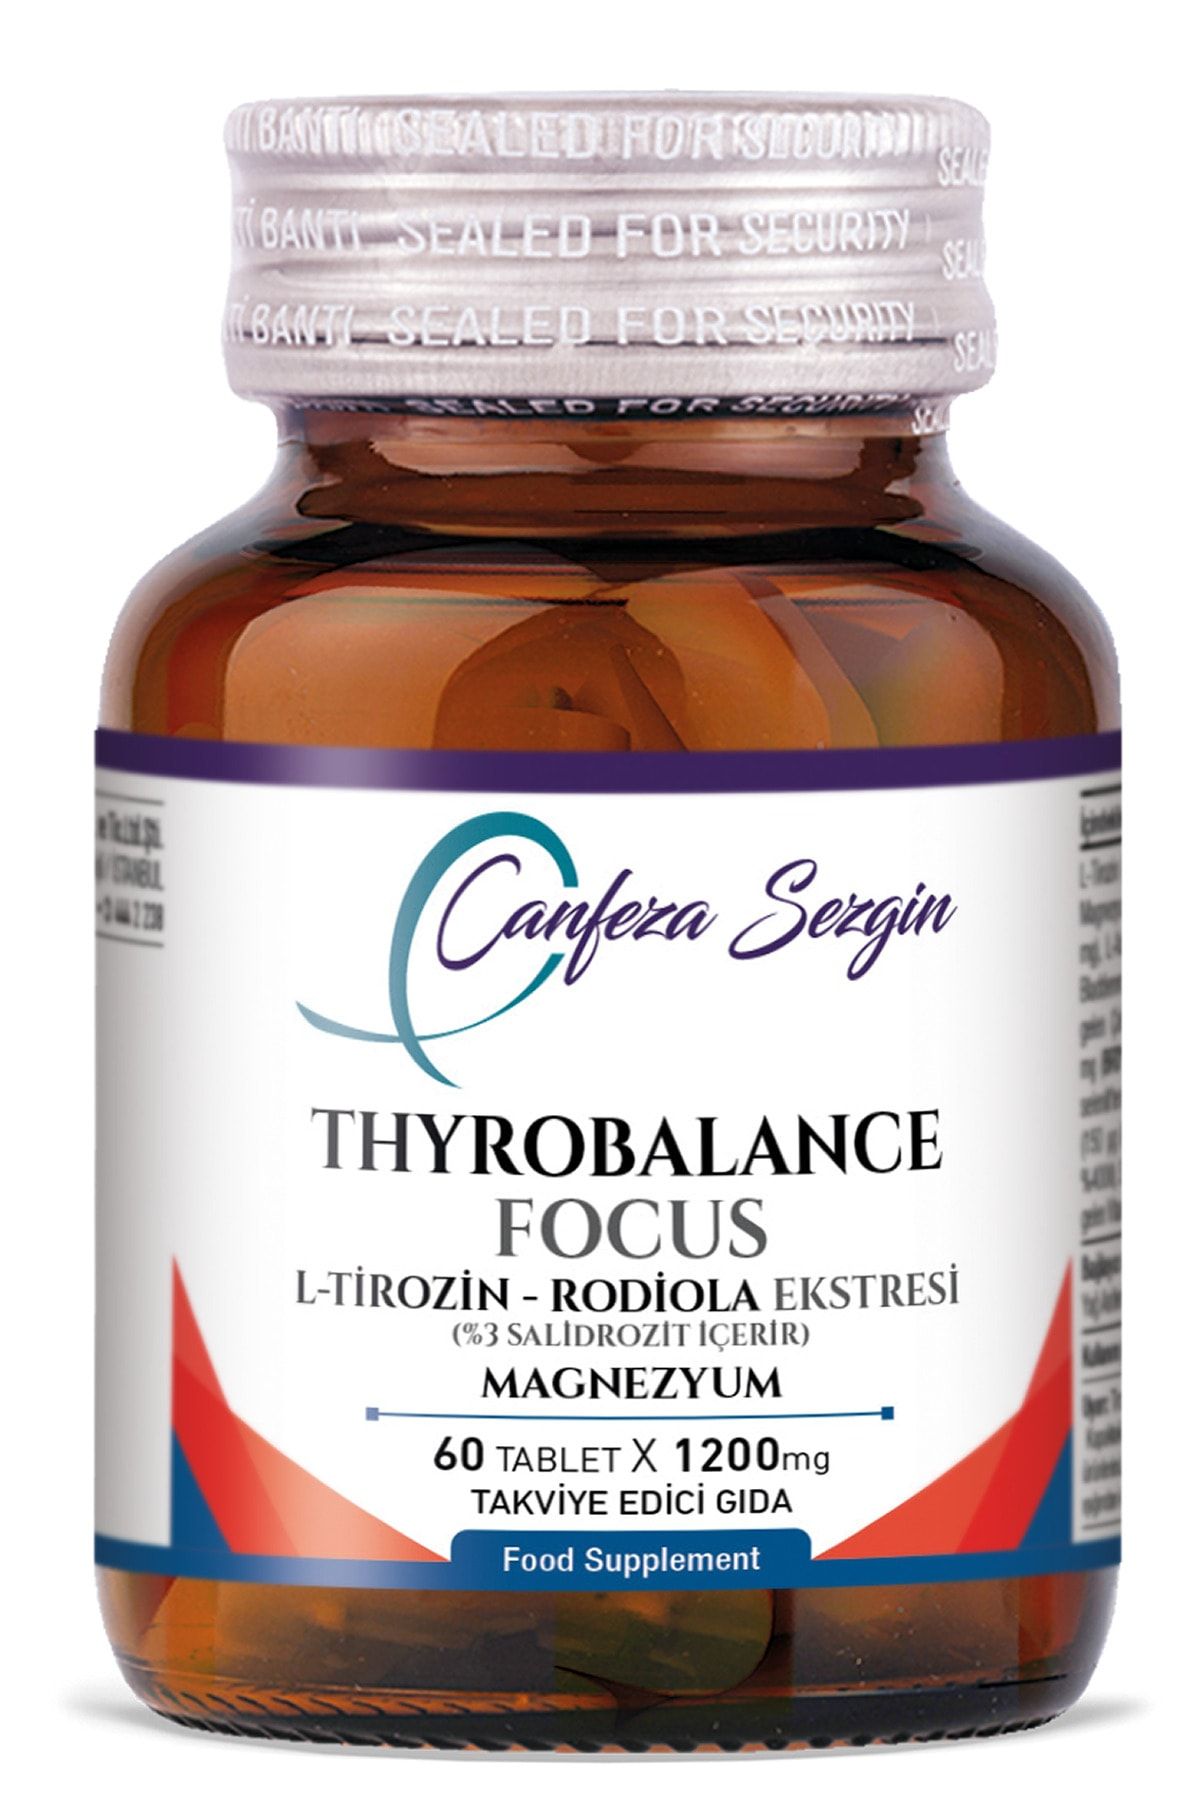 Canfeza Sezgin Thyrobalance Focus L-tirozin - Rodiola Ekstresi